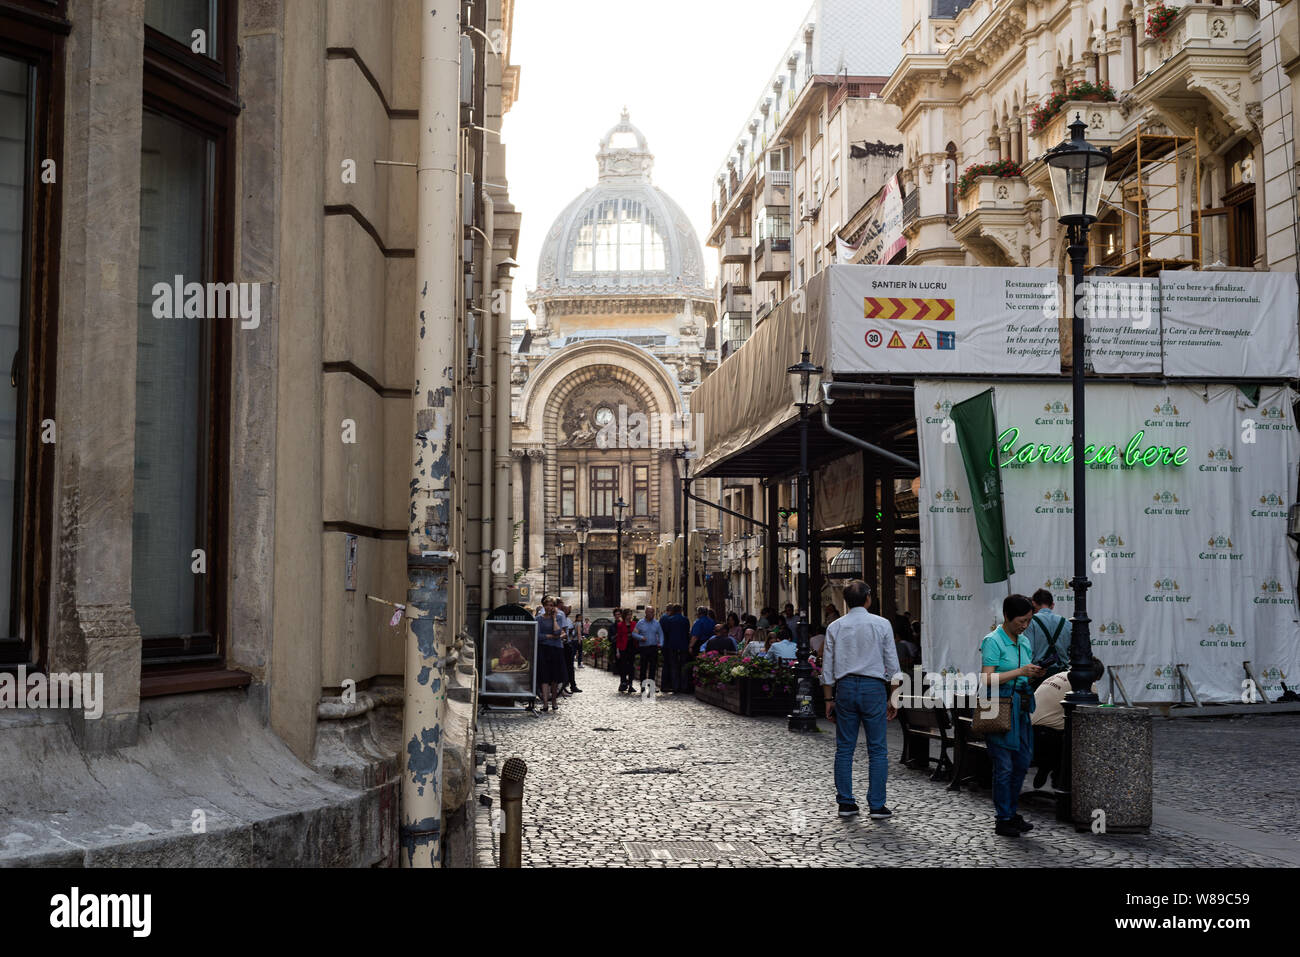 Una strada acciottolata nella città vecchia di Bucarest con un ristorante Caru' cu bere superiore locale sulla destra. Foto Stock